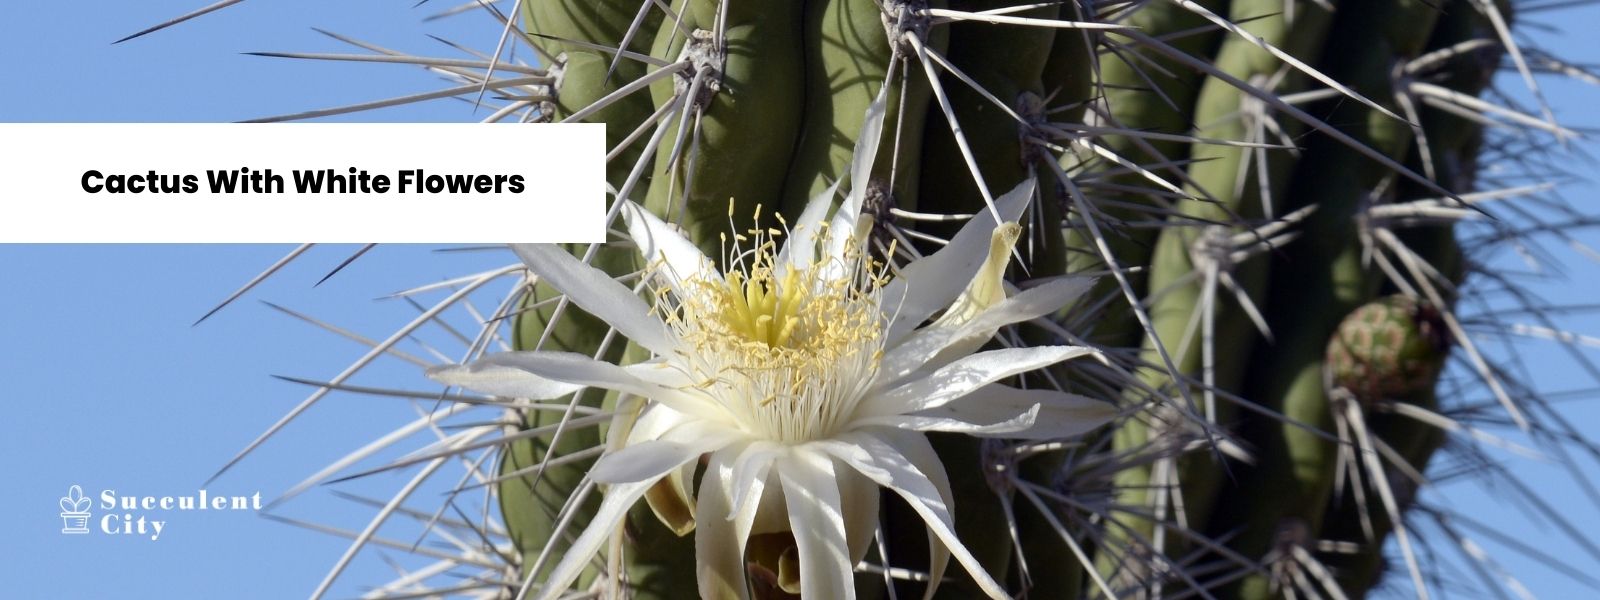 Una lista compacta de cactus con flores blancas.